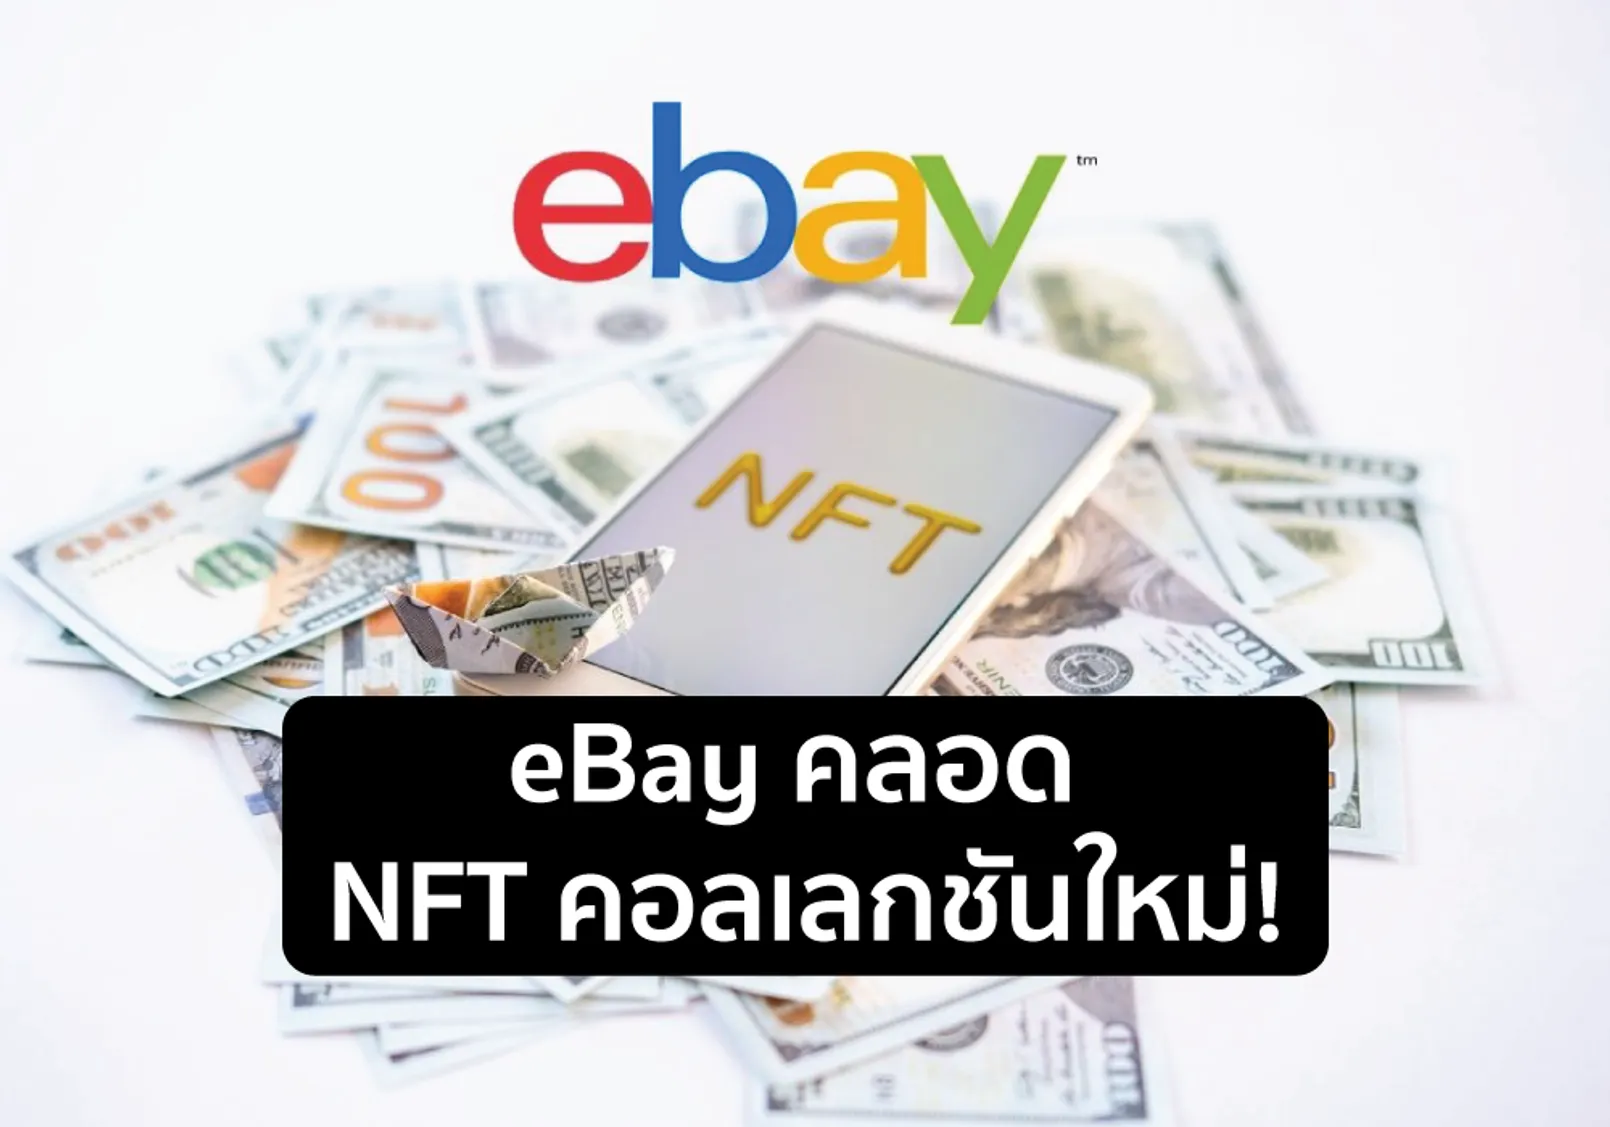 Ebay Nft.png